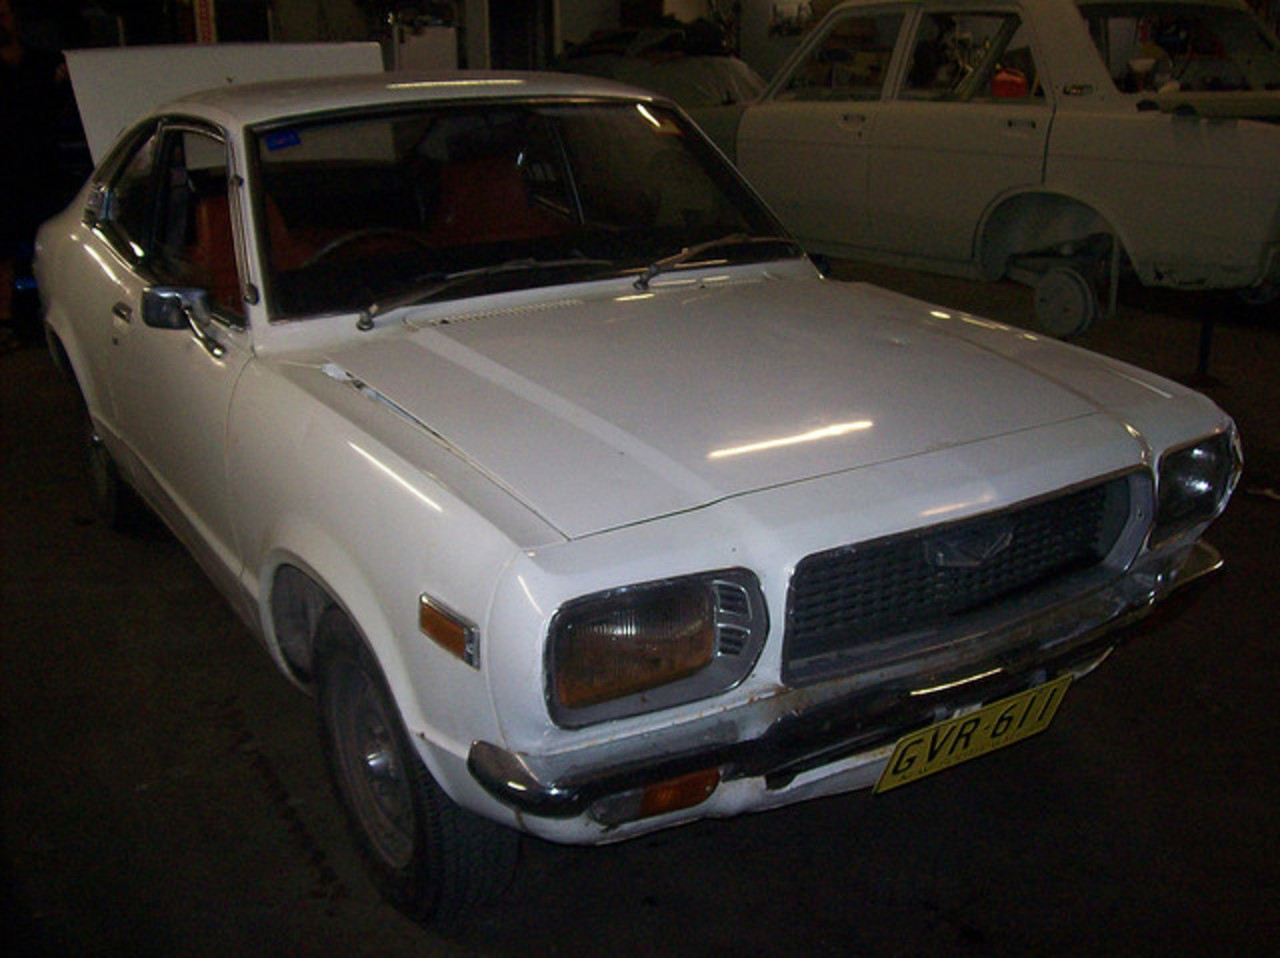 1974 Mazda 808 Super Deluxe Coupe (original)